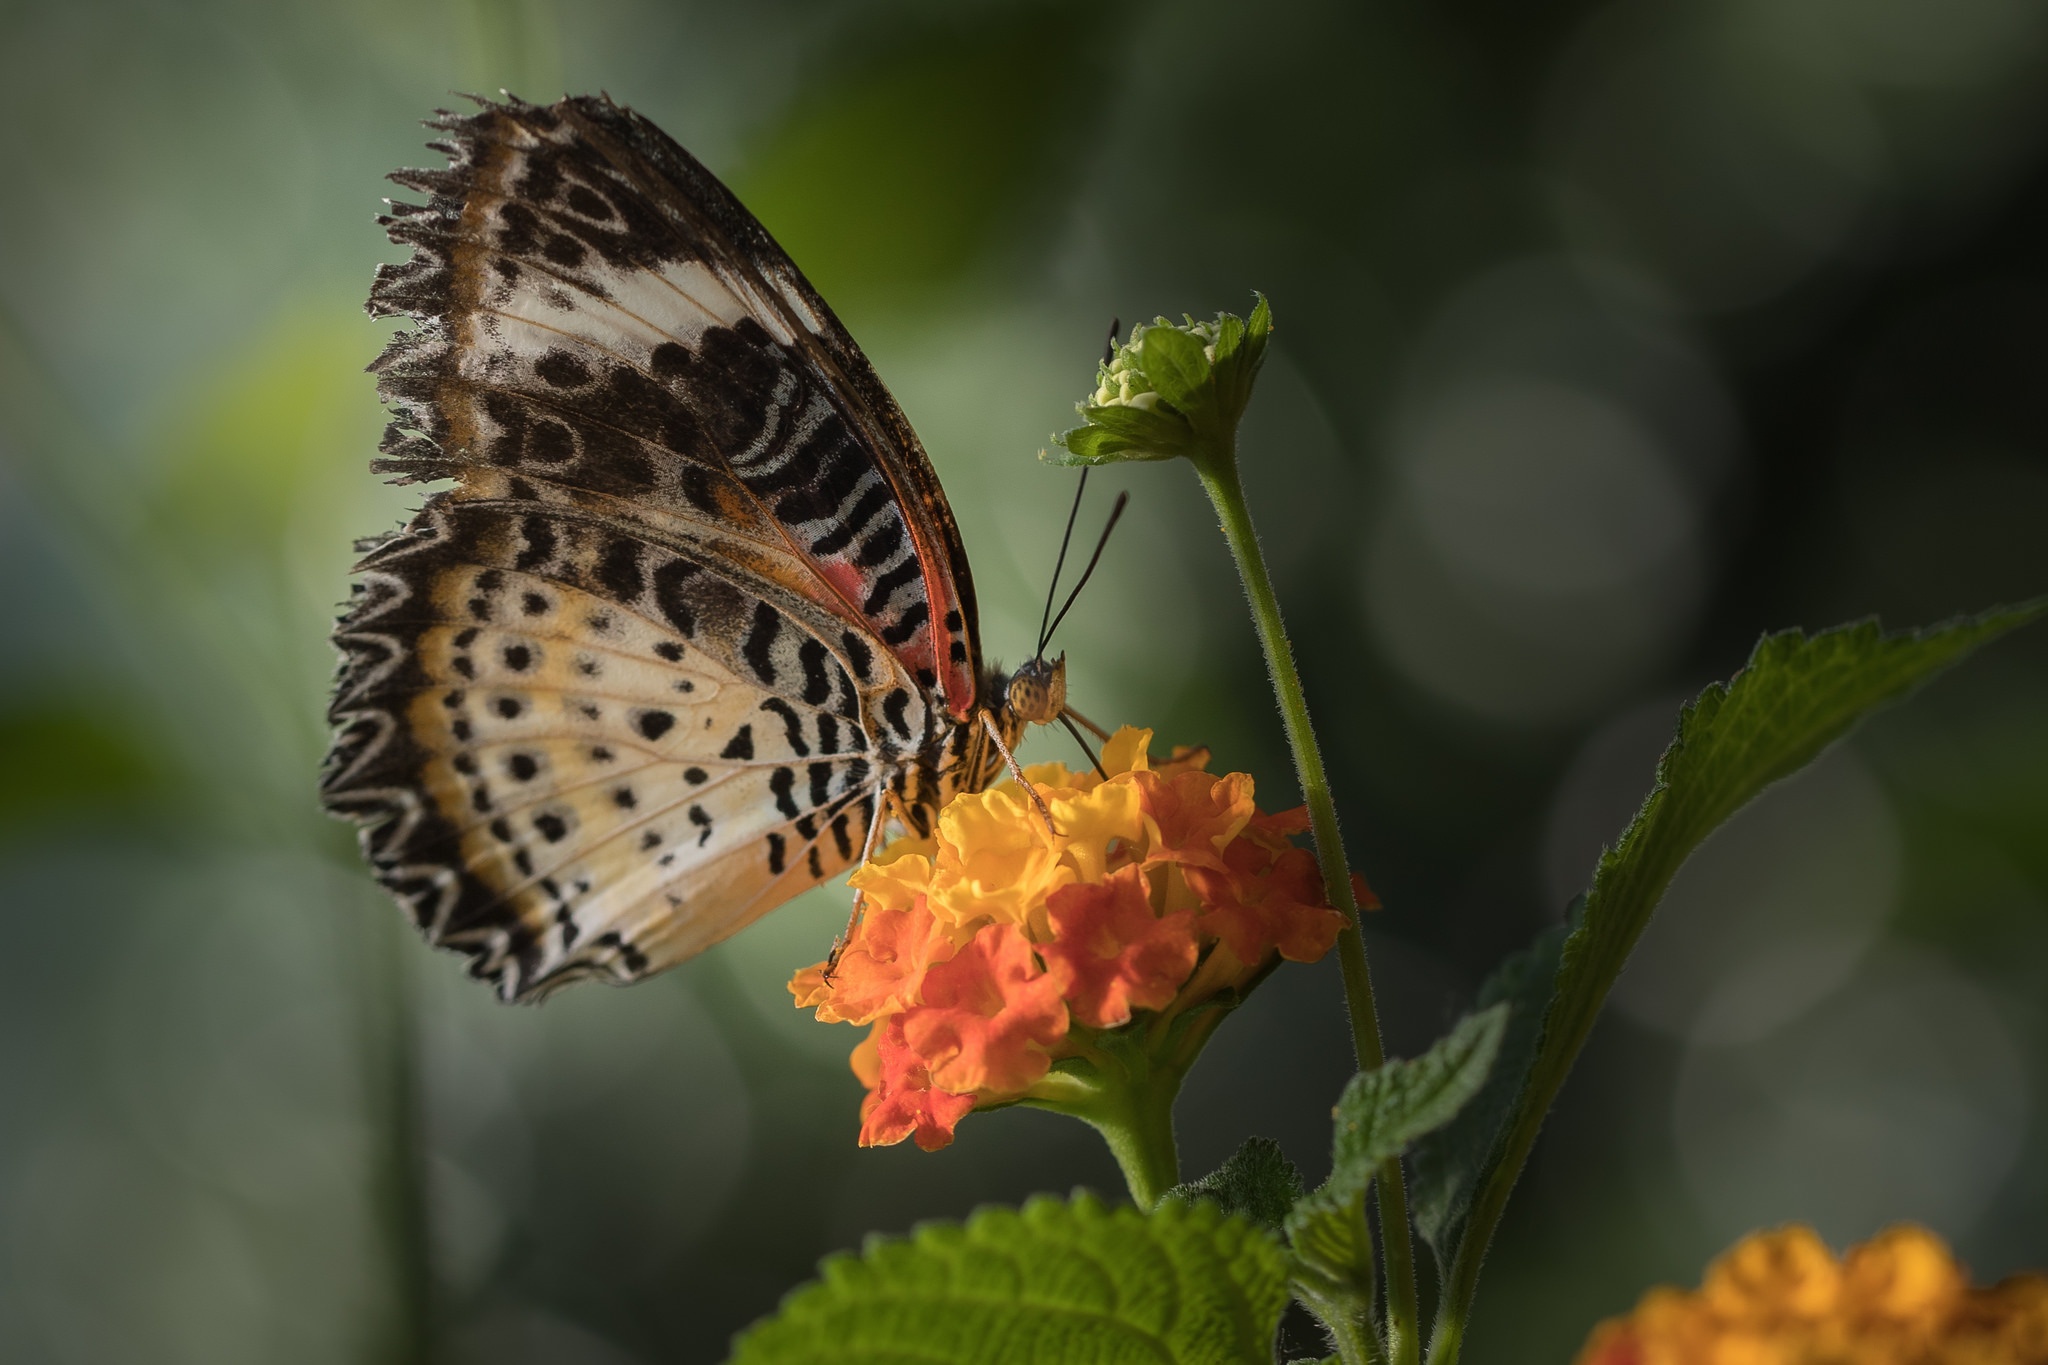 Descarga gratuita de fondo de pantalla para móvil de Animales, Insecto, Mariposa, Macrofotografía, Flor Naranja.